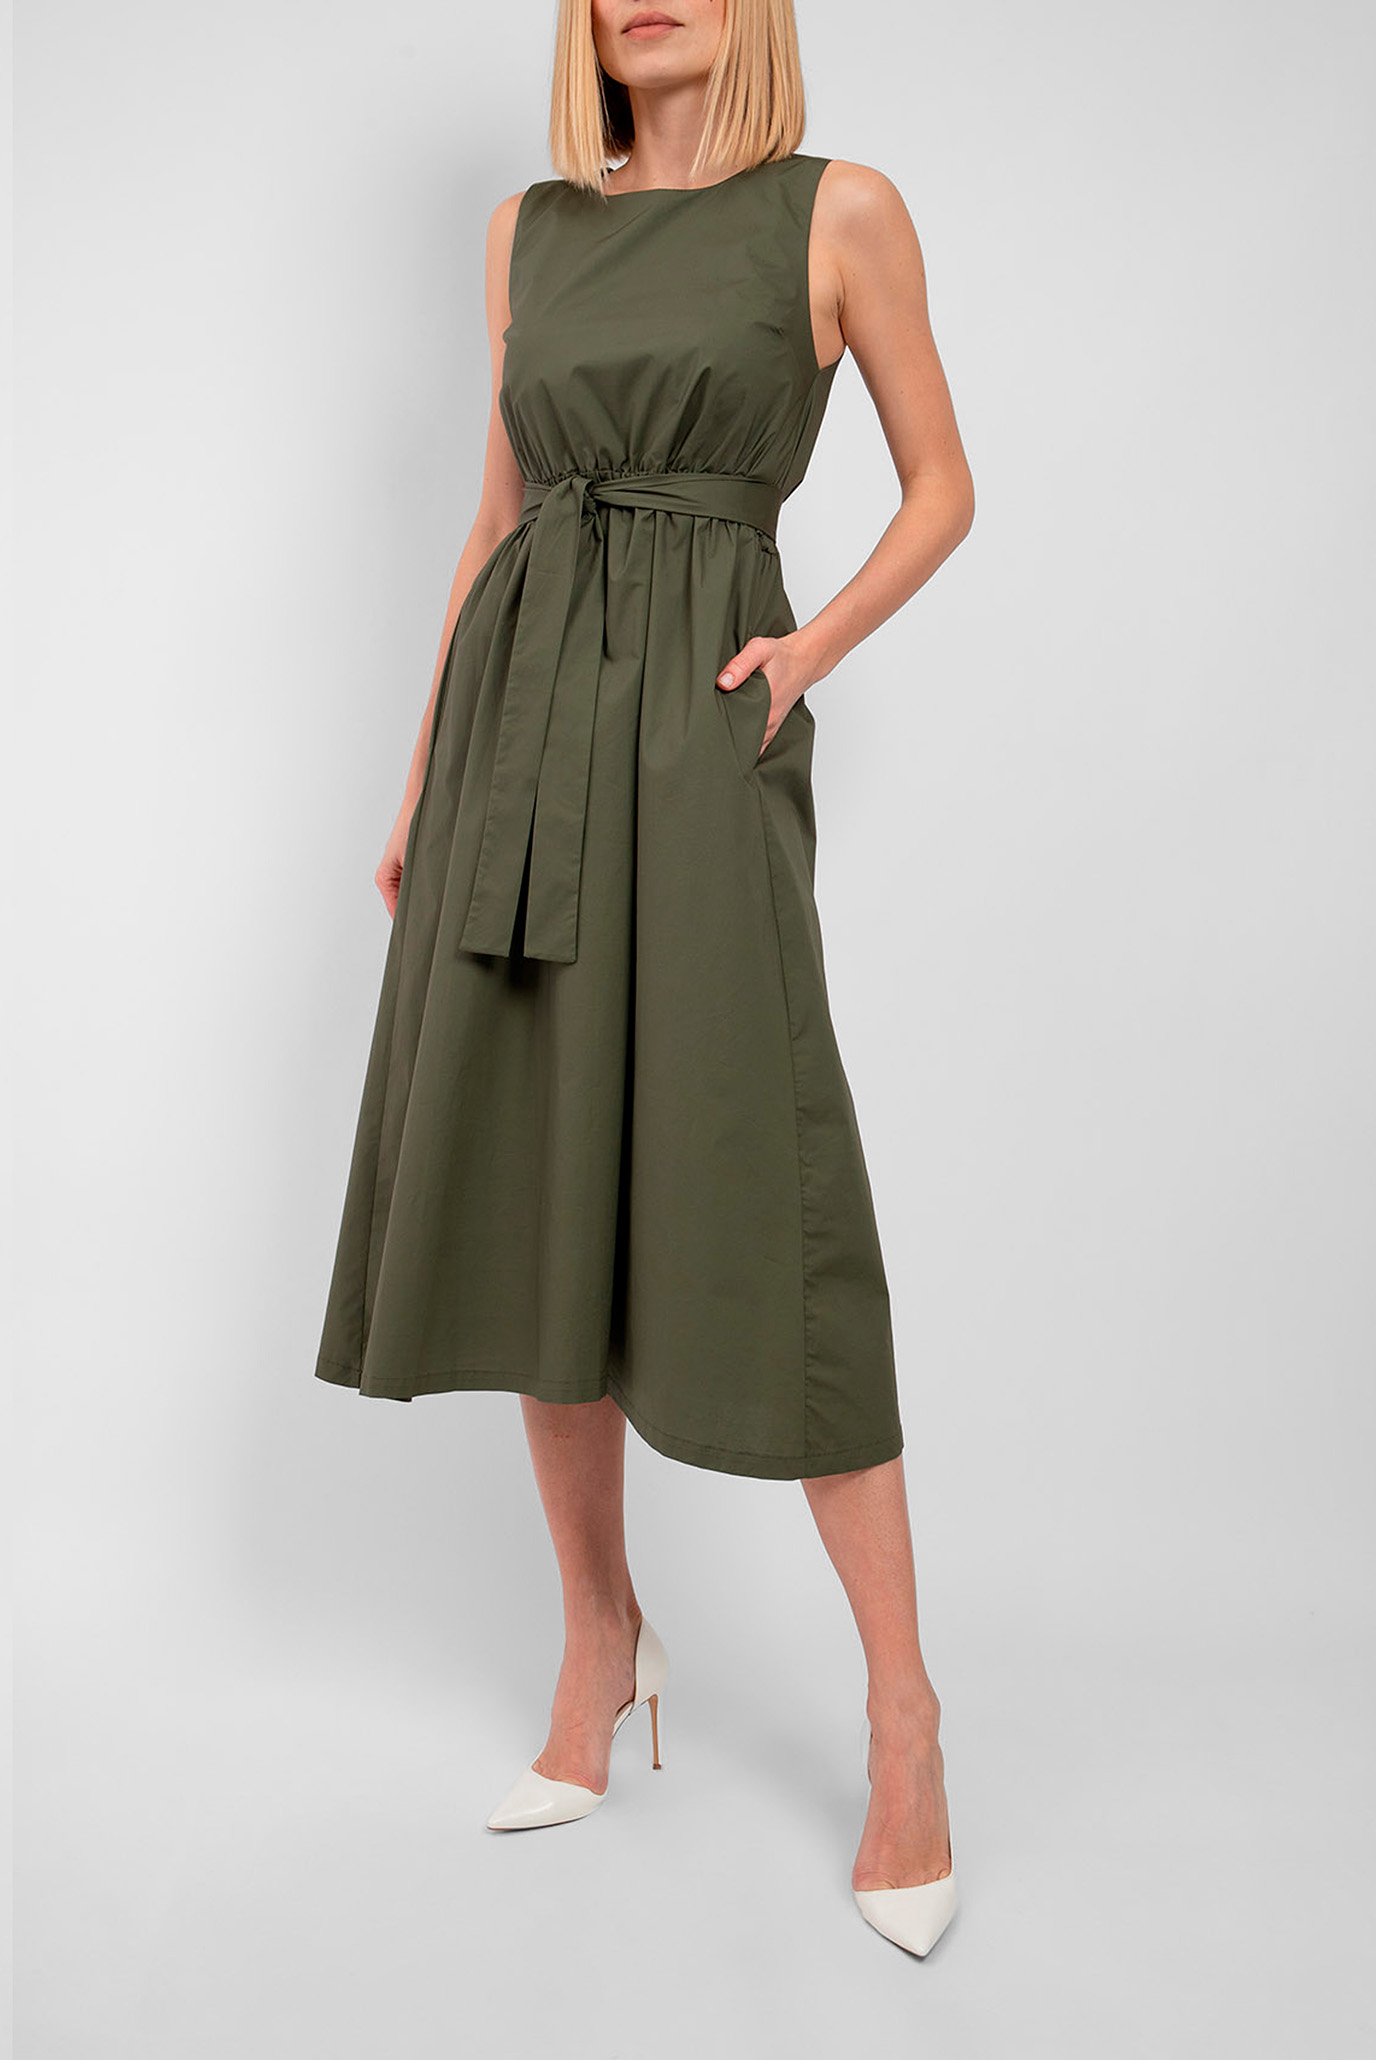 Женское зеленое платье 1